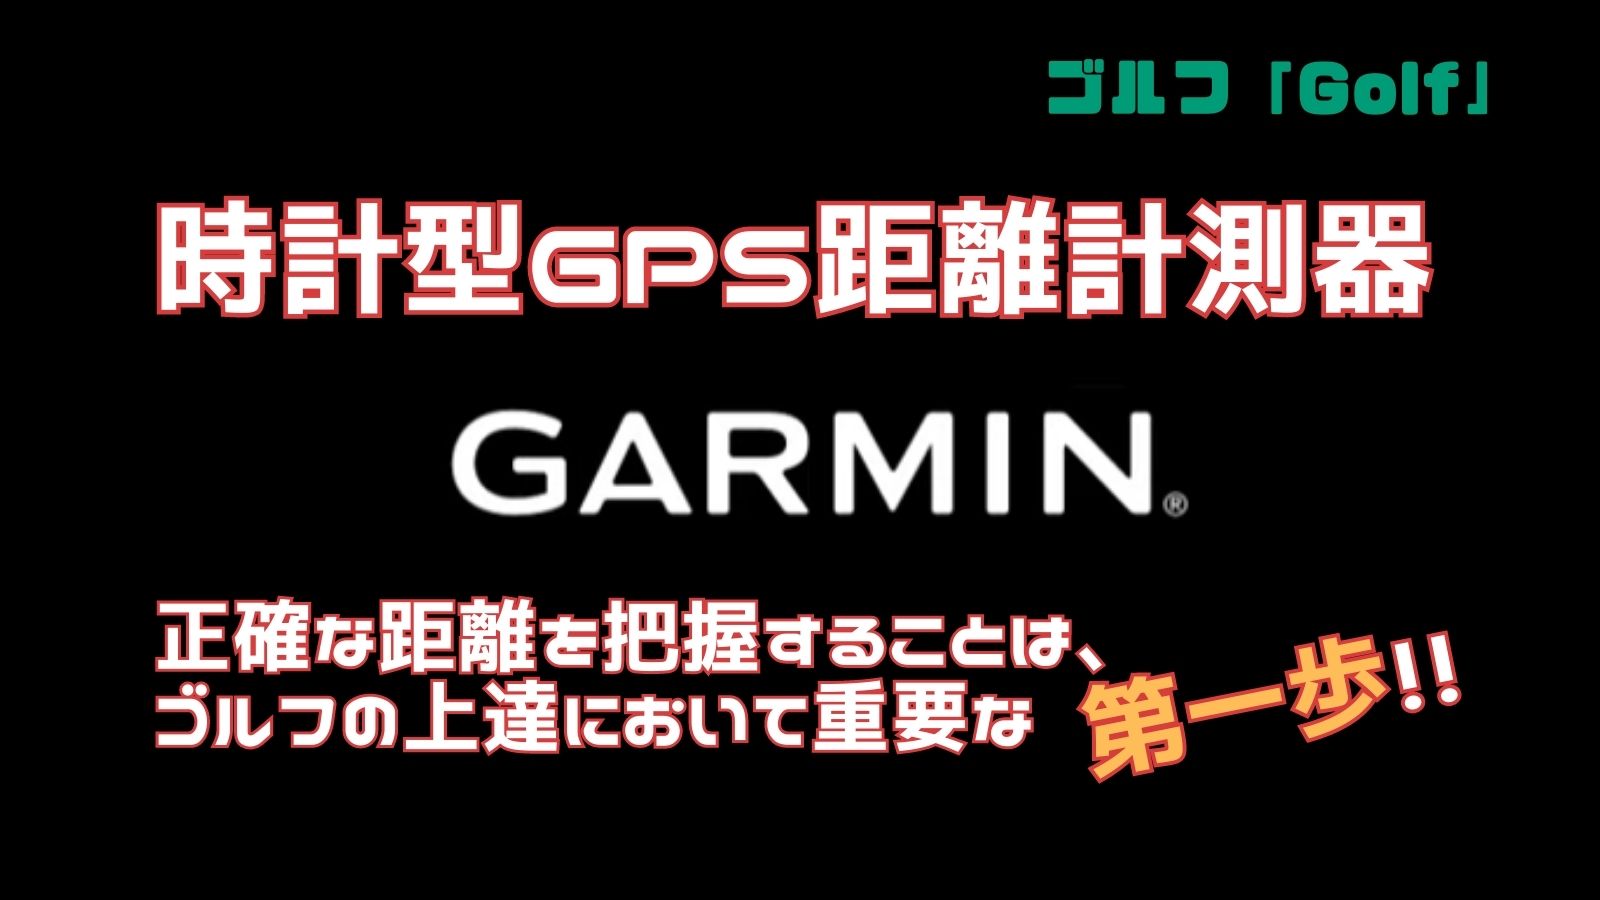 時計型GPS距離計測器のGARMINを紹介